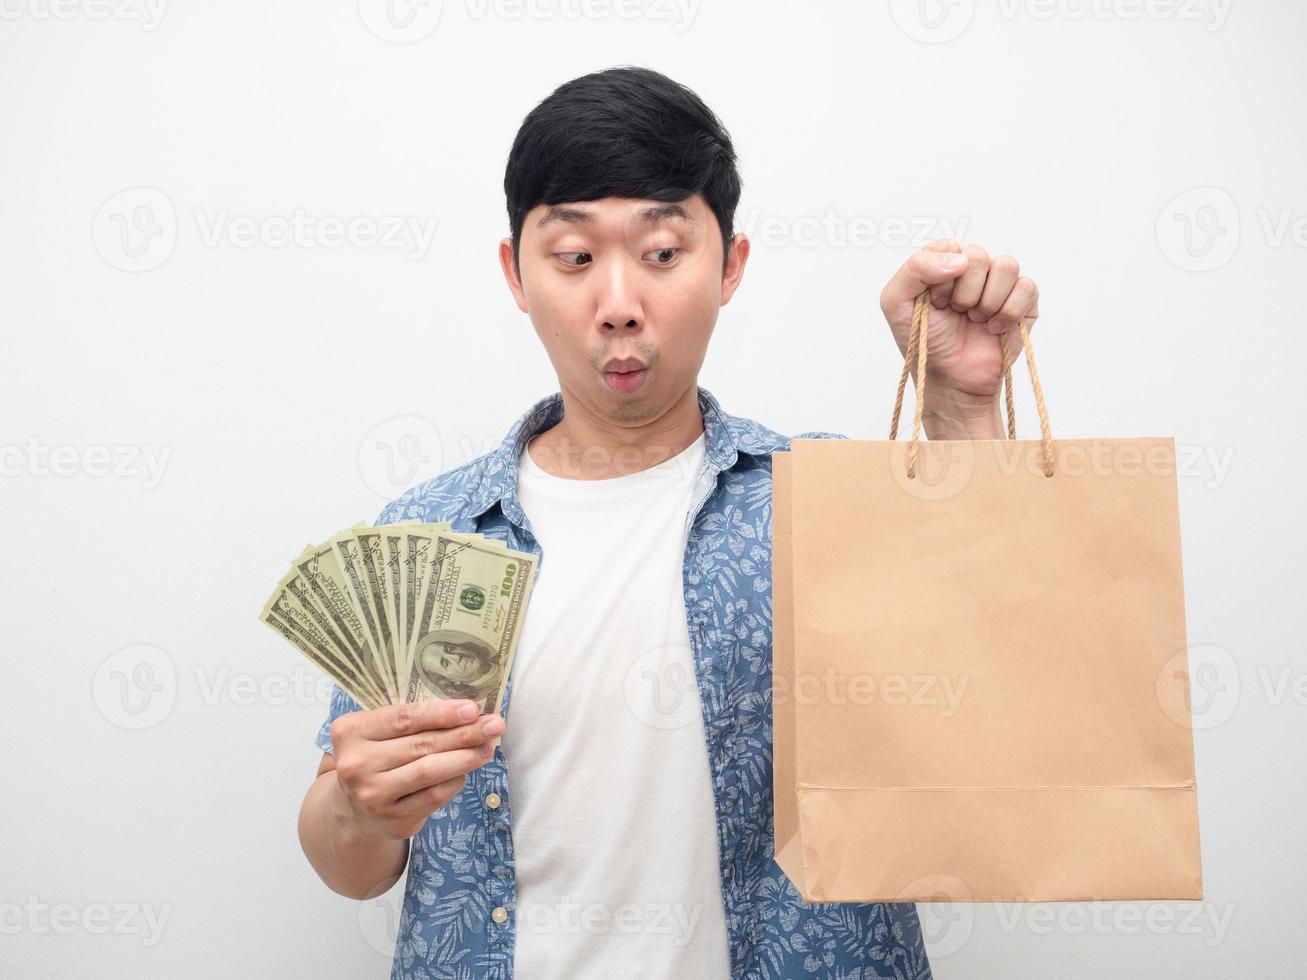 un homme asiatique se sent excité en tenant beaucoup d'argent en regardant un sac à provisions à la main photo